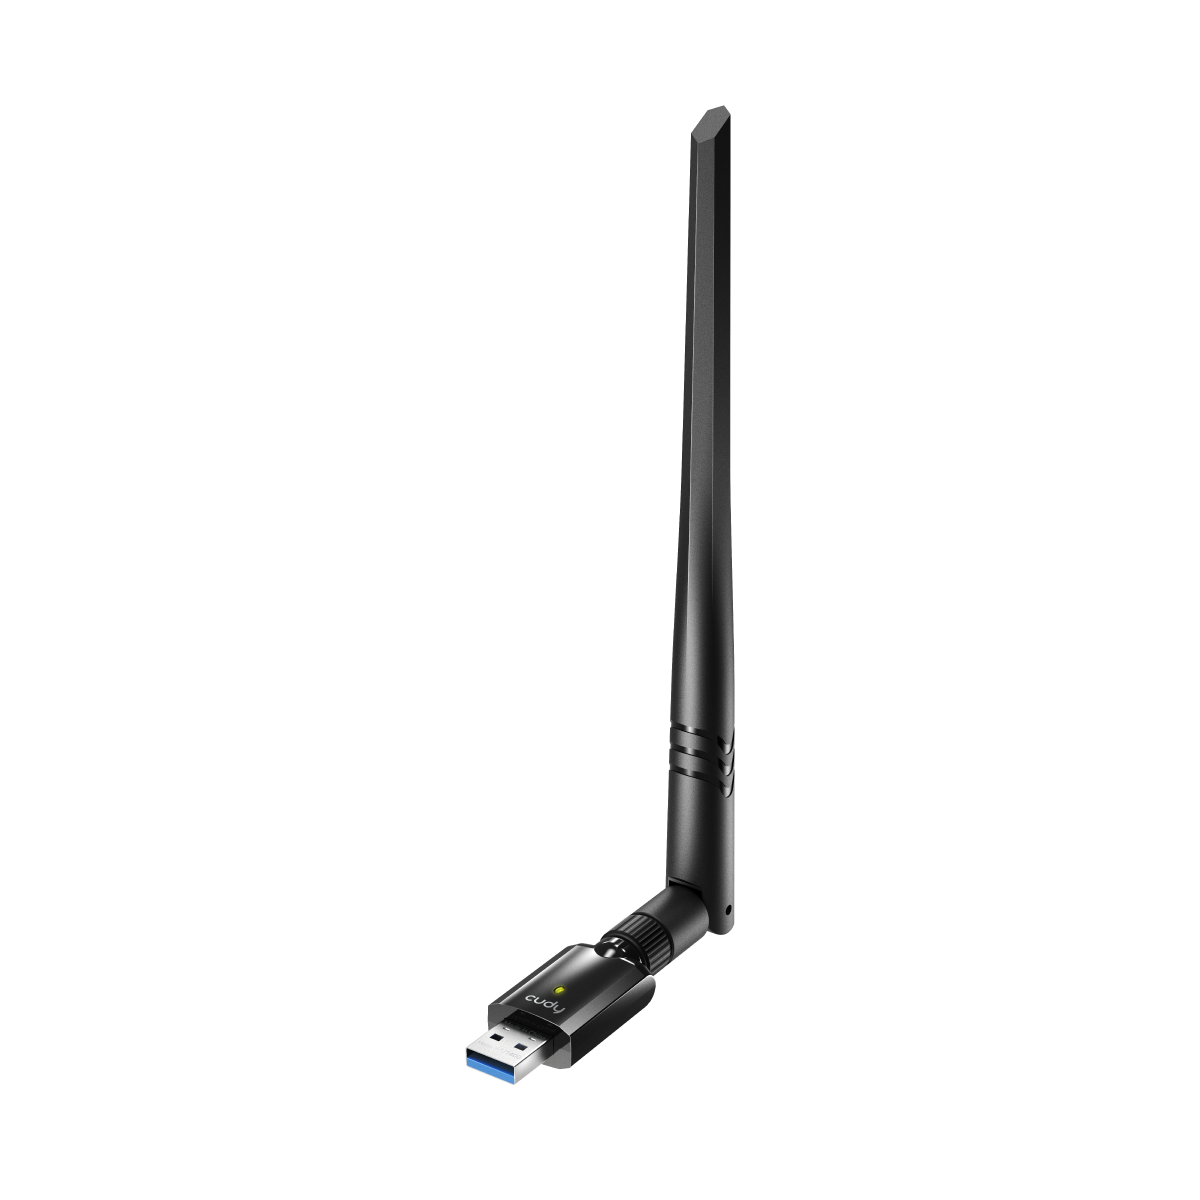 Cudy AC1300 Wi-Fi High-Gain USB Adapter (WU1400)